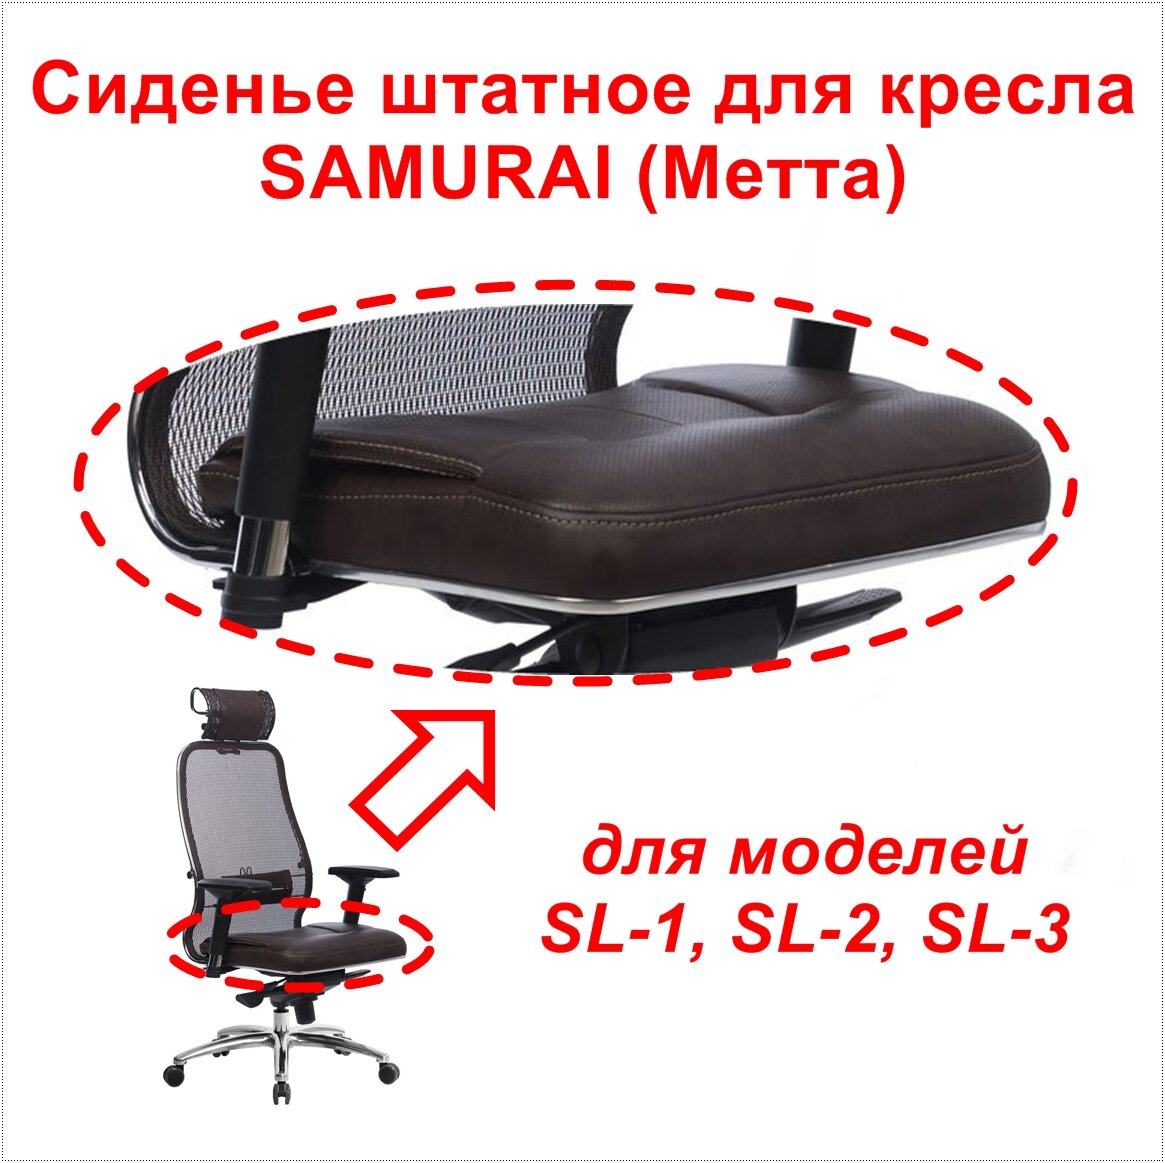 Сиденье штатное от кресла Samurai Метта для моделей SL-1, SL-2, SL-3. Цвет тёмно-коричневый. Нагрузка до 120 кг.